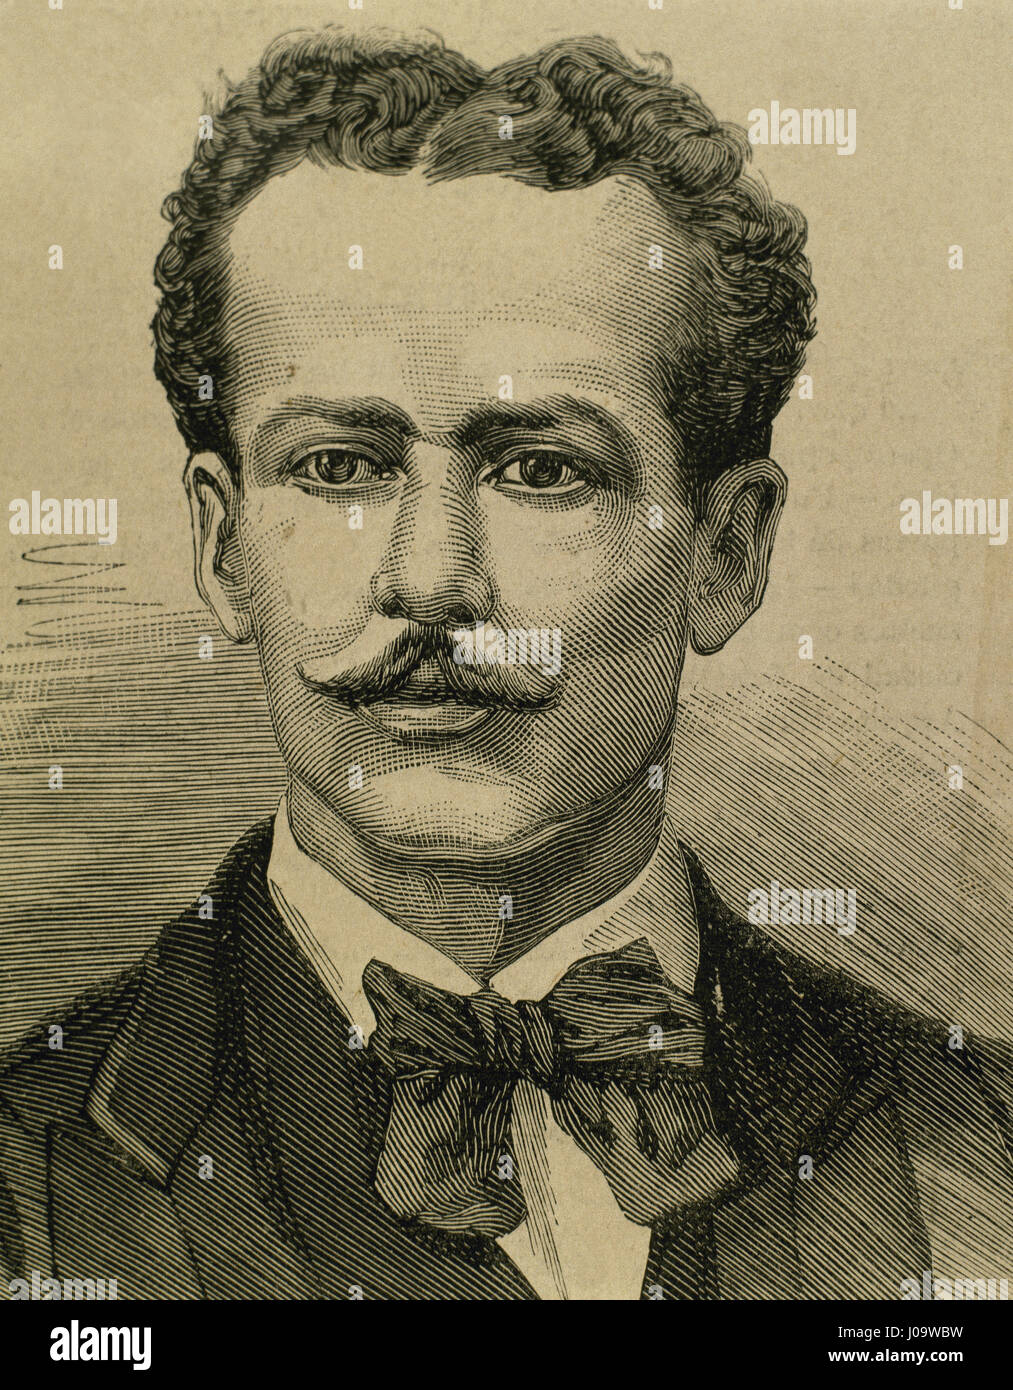 Jose Nicolas Baltasar Fernandez de Pierola y Villena, bekannt als 'Der Kalif', (1839-1913). Peruanischer Politiker und Finance Minister. Präsident der Republik Peru, ab 1879-1881-1895-1899. Porträt. Gravur. Stockfoto